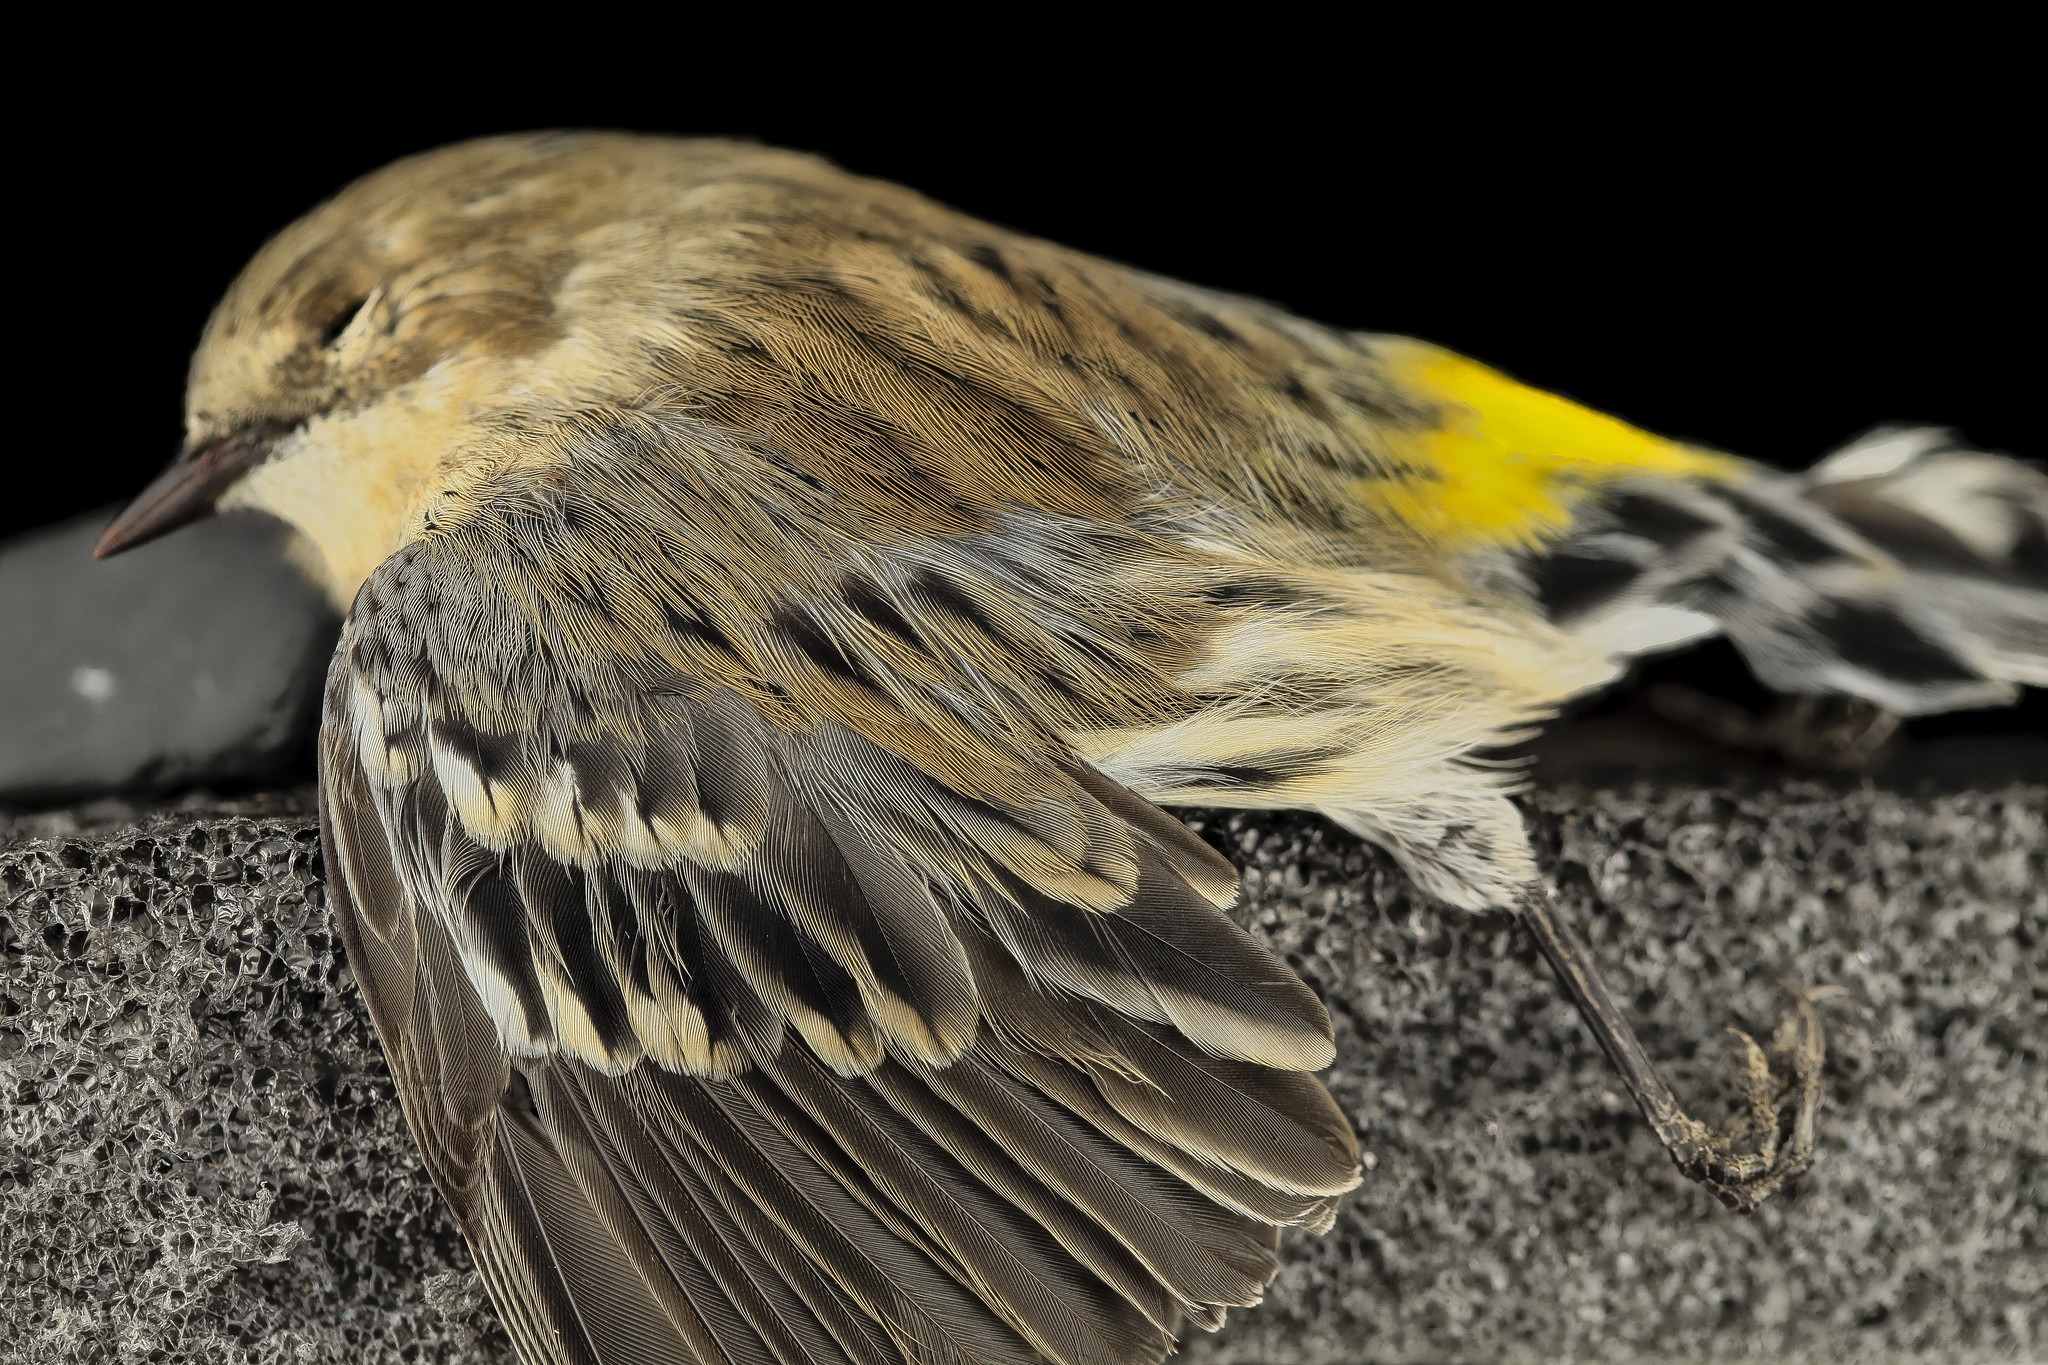 一只死的黄臀林莺躺在水泥地上, 与人造建筑物相撞的结果